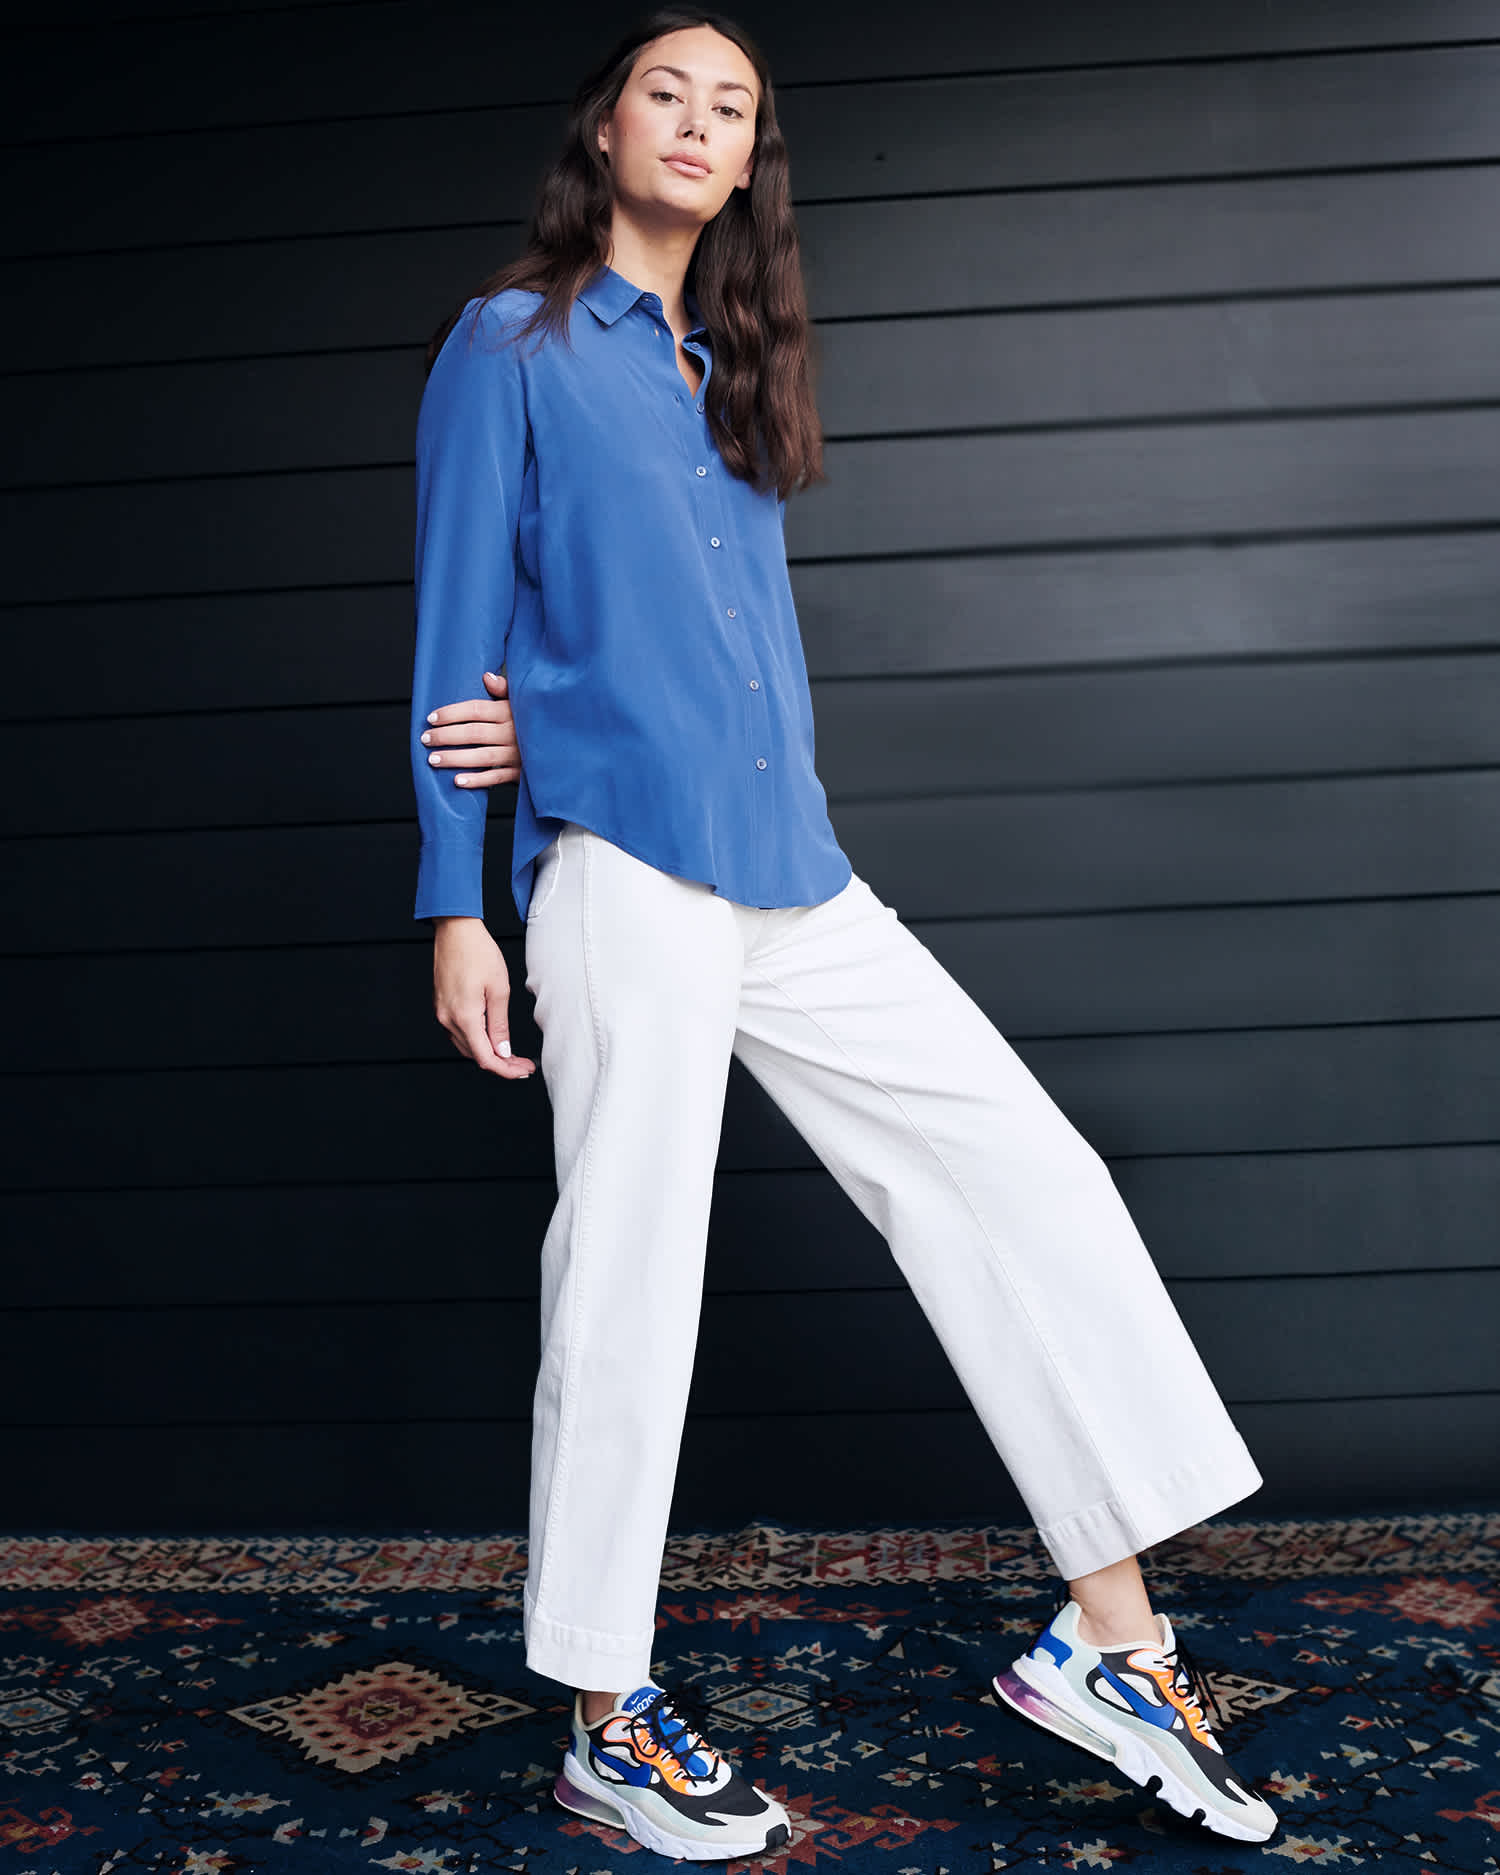 Woman wearing washable silk blouse in blue walking